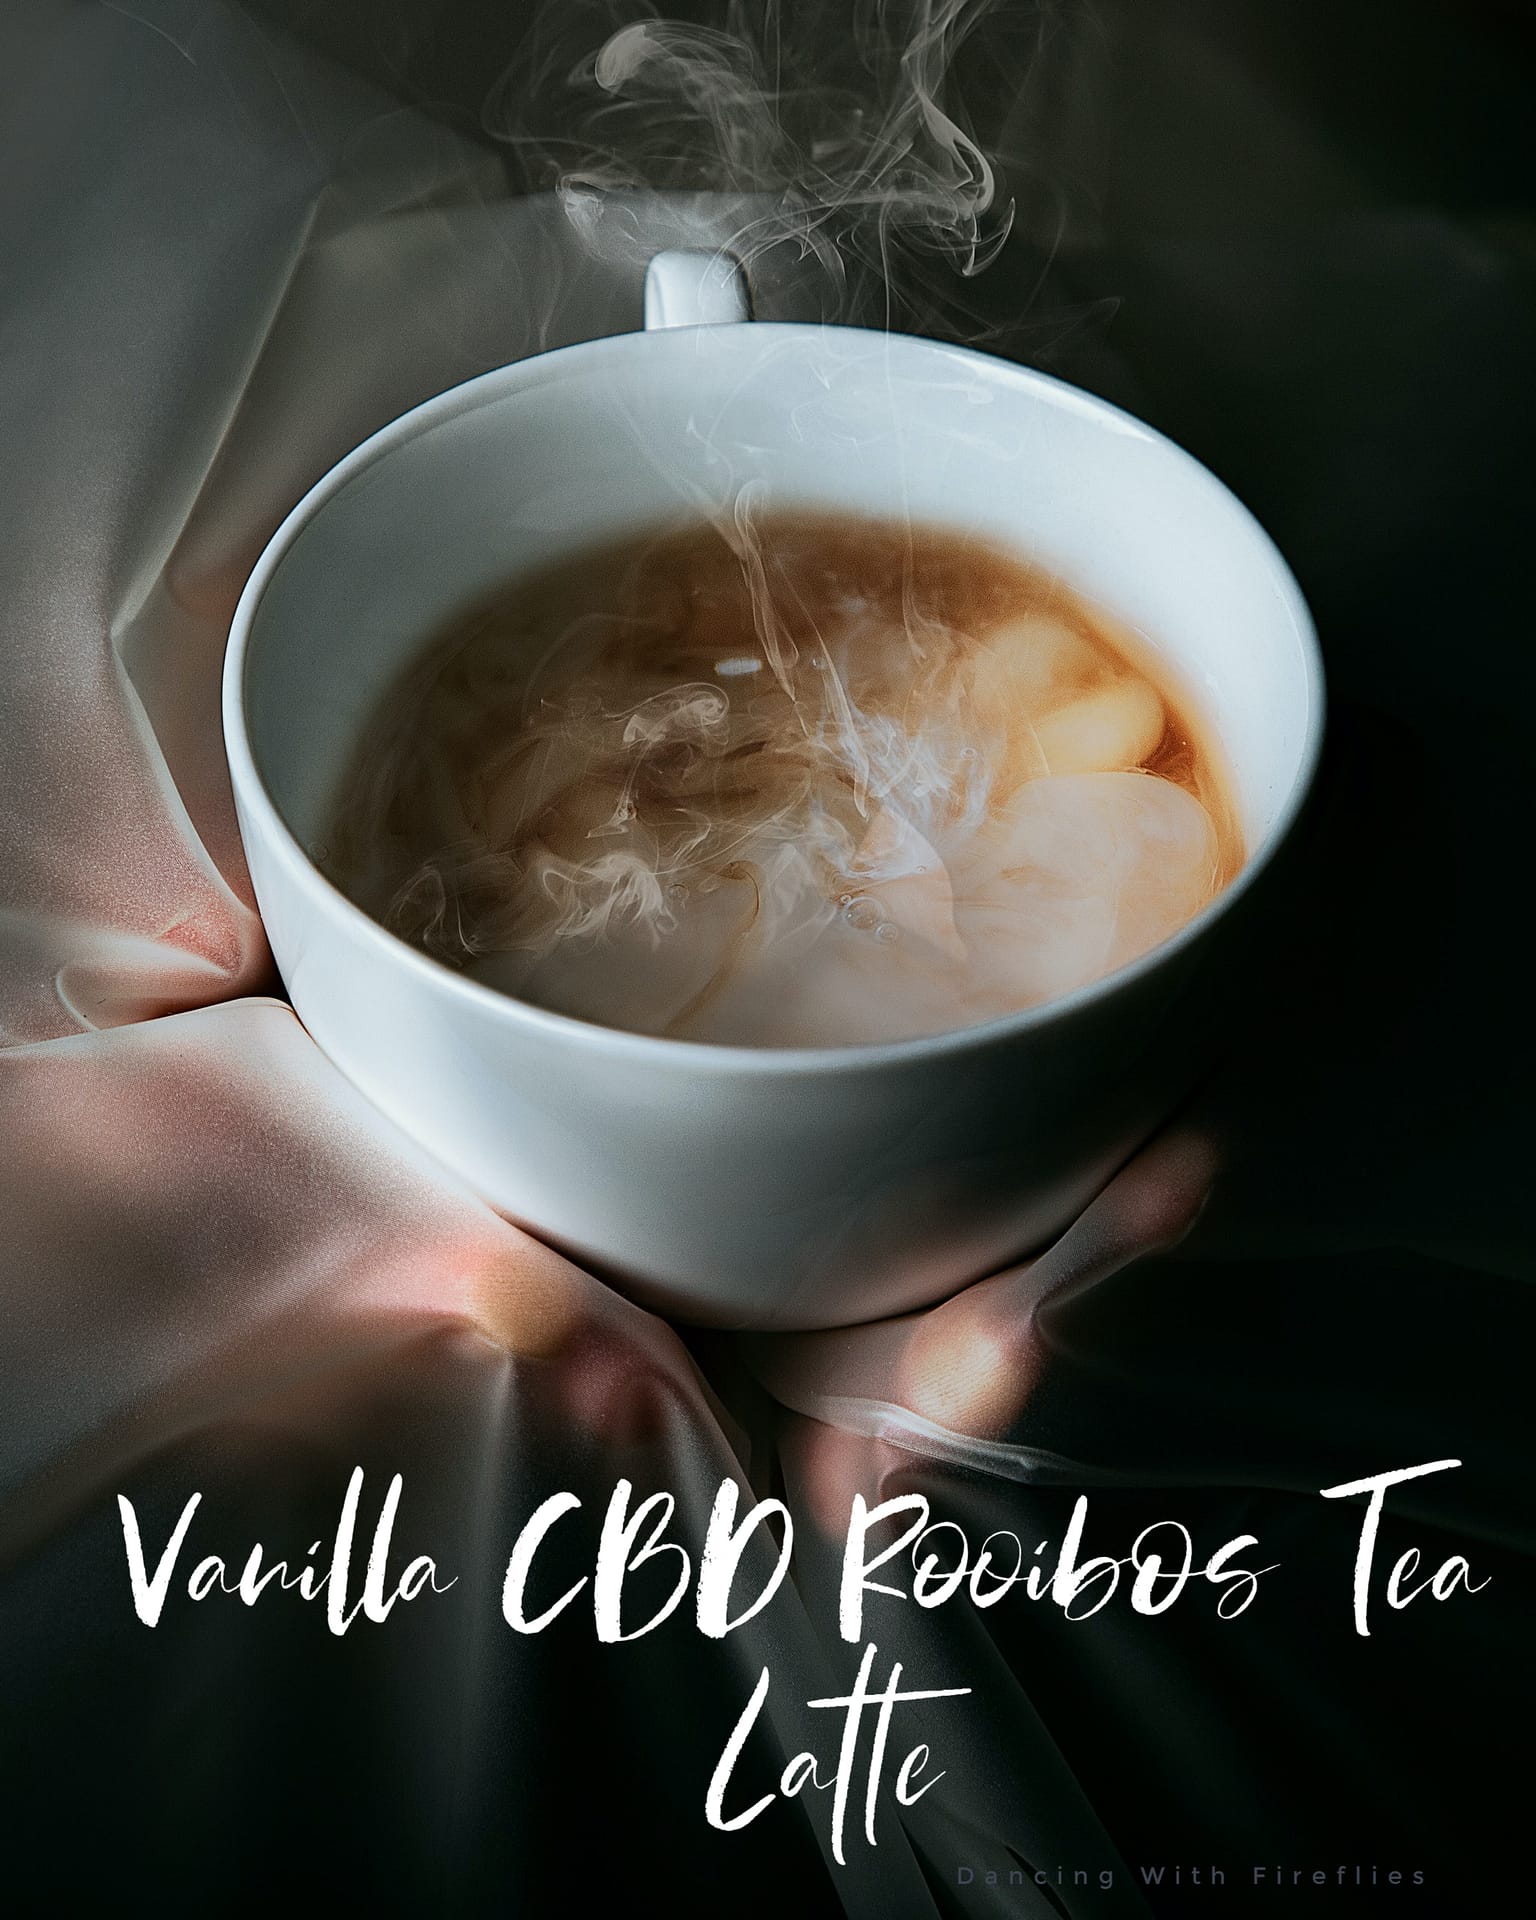 Vanilla CBD Rooibos Tea Latte